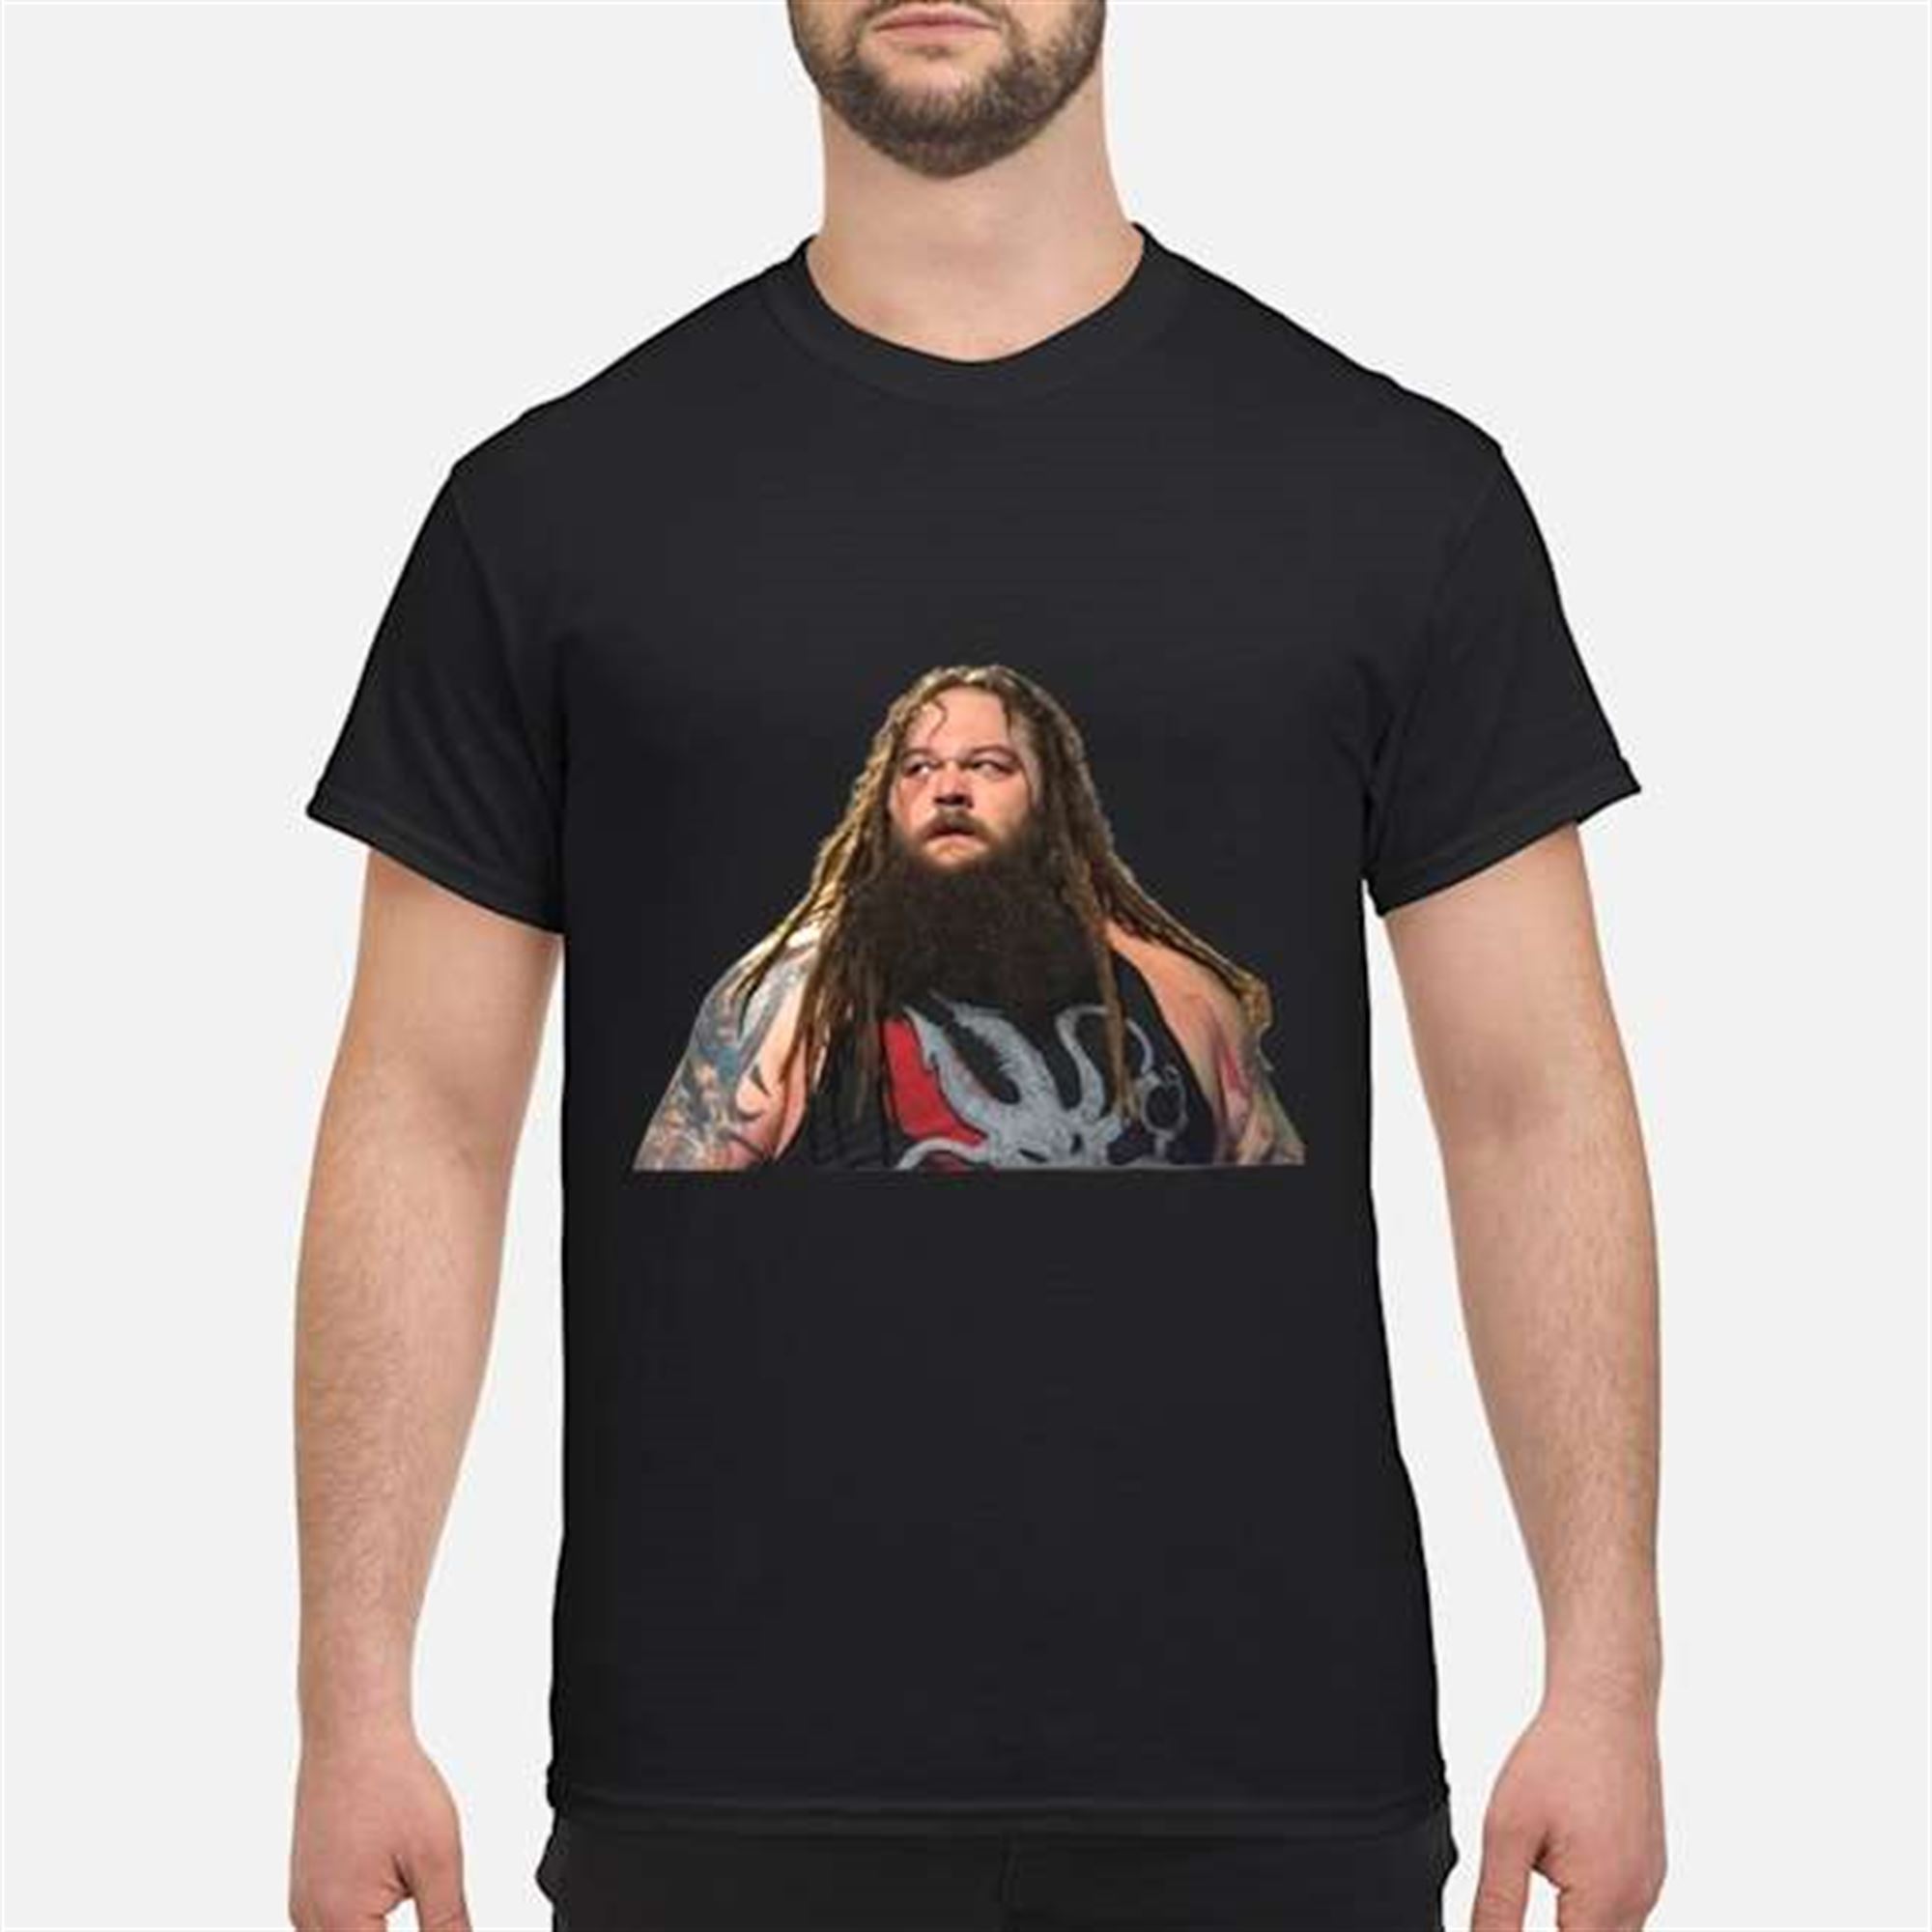 Bray Wyatt Wwe T-shirt Plus Size Up To 5x